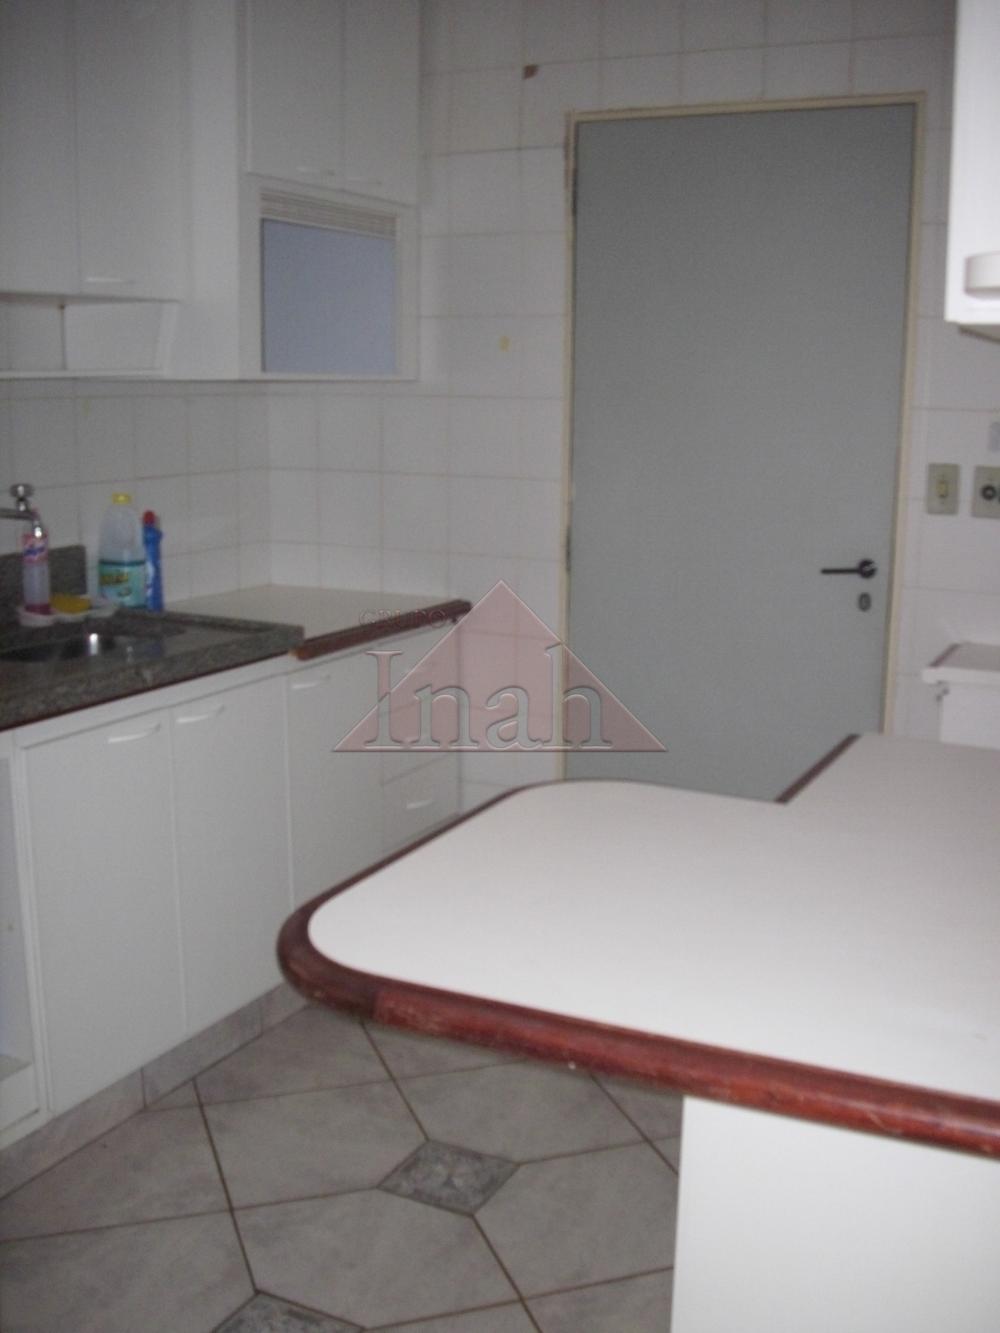 Alugar Apartamentos / Apartamento em Ribeirão Preto R$ 800,00 - Foto 15